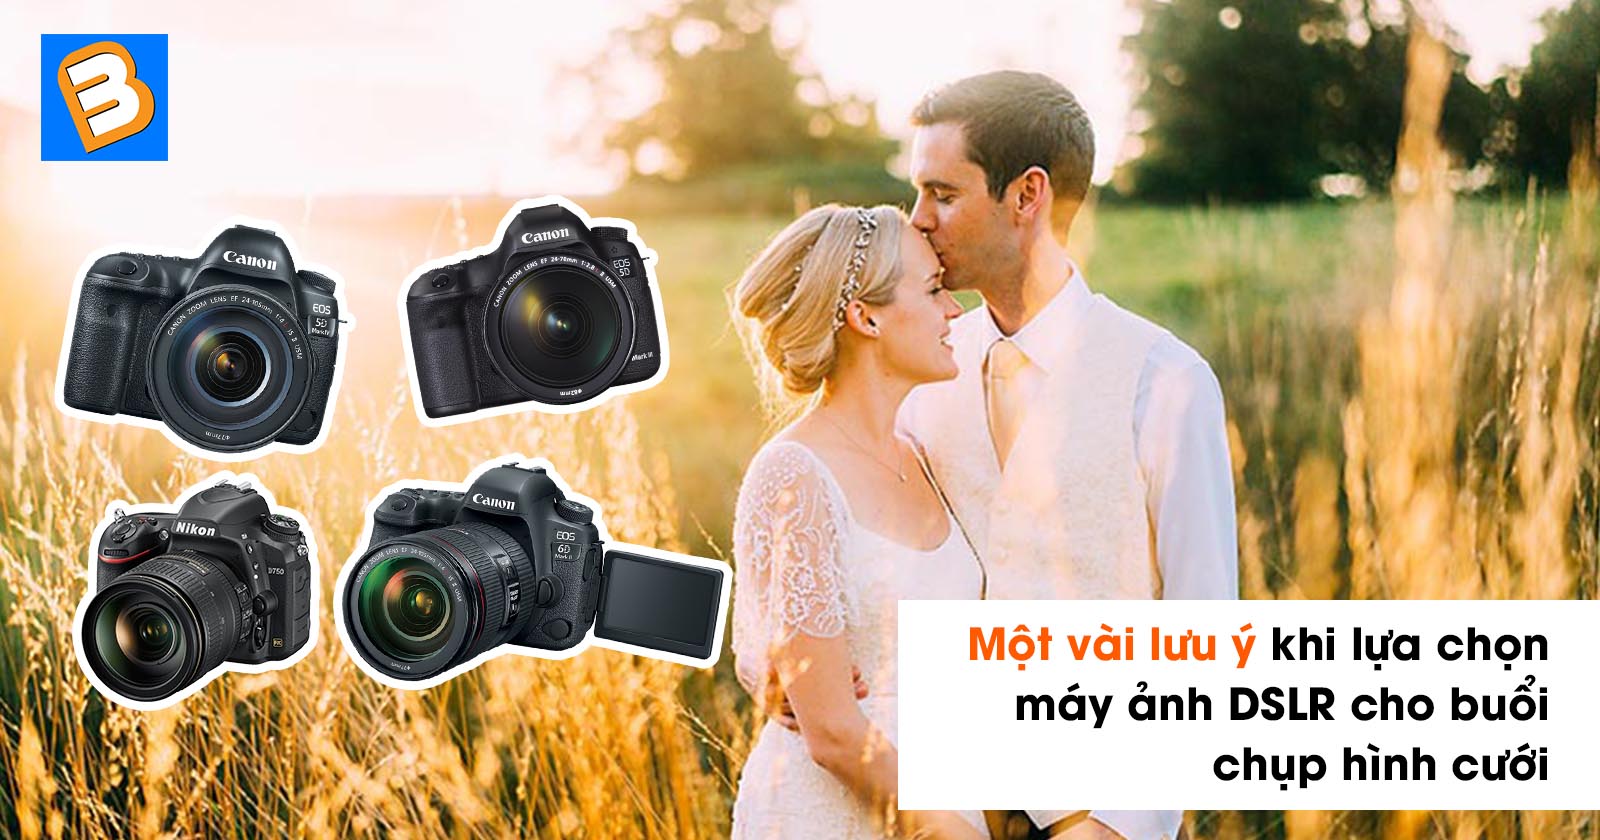 Lựa chọn máy ảnh DSLR cho buổi chụp hình cưới là một quá trình quan trọng để tạo ra bộ sưu tập ảnh đẹp và chất lượng. Với những người mới bắt đầu, có rất nhiều yếu tố mà bạn cần phải lưu ý khi chọn một loại máy ảnh tốt nhất cho bộ ảnh cưới của bạn. Điều này bao gồm độ phân giải, độ nhạy sáng, quang học, ống kính và cấu hình chung.